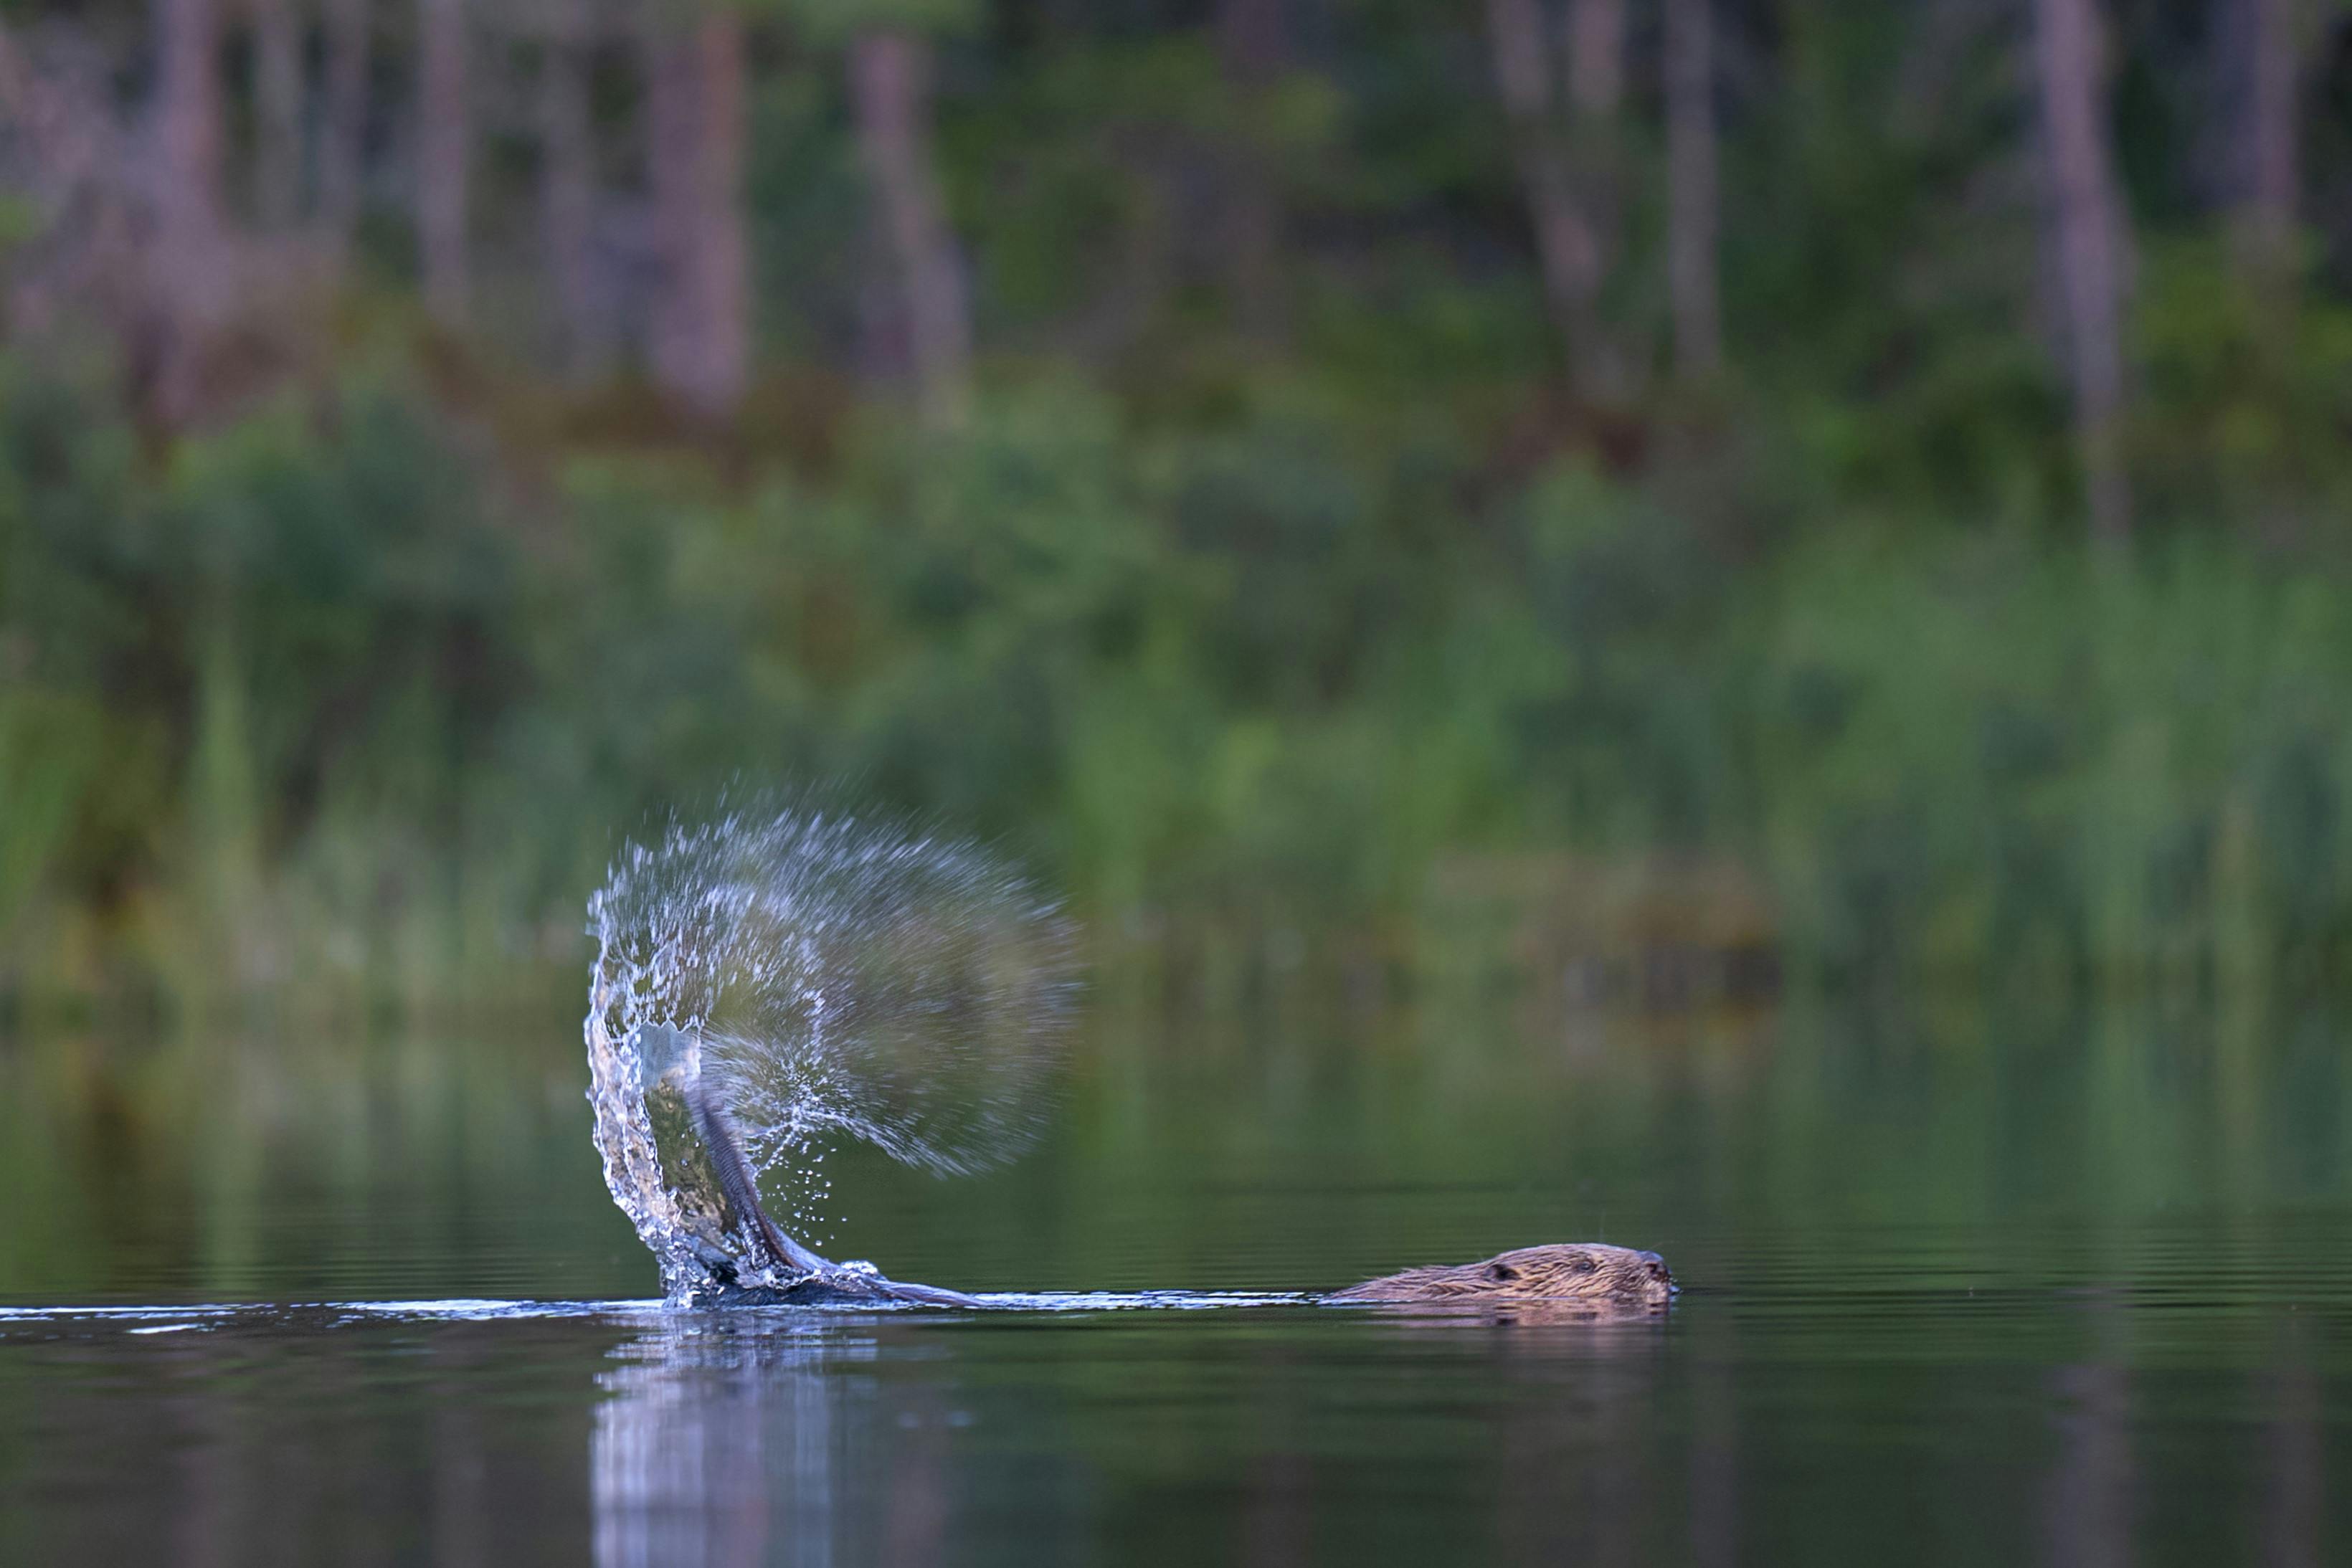 Bäver slår sin svans i vattenytan och skickar droppar i luften, fotograferad under bäversafari i Sverige av Nordic Discovery.